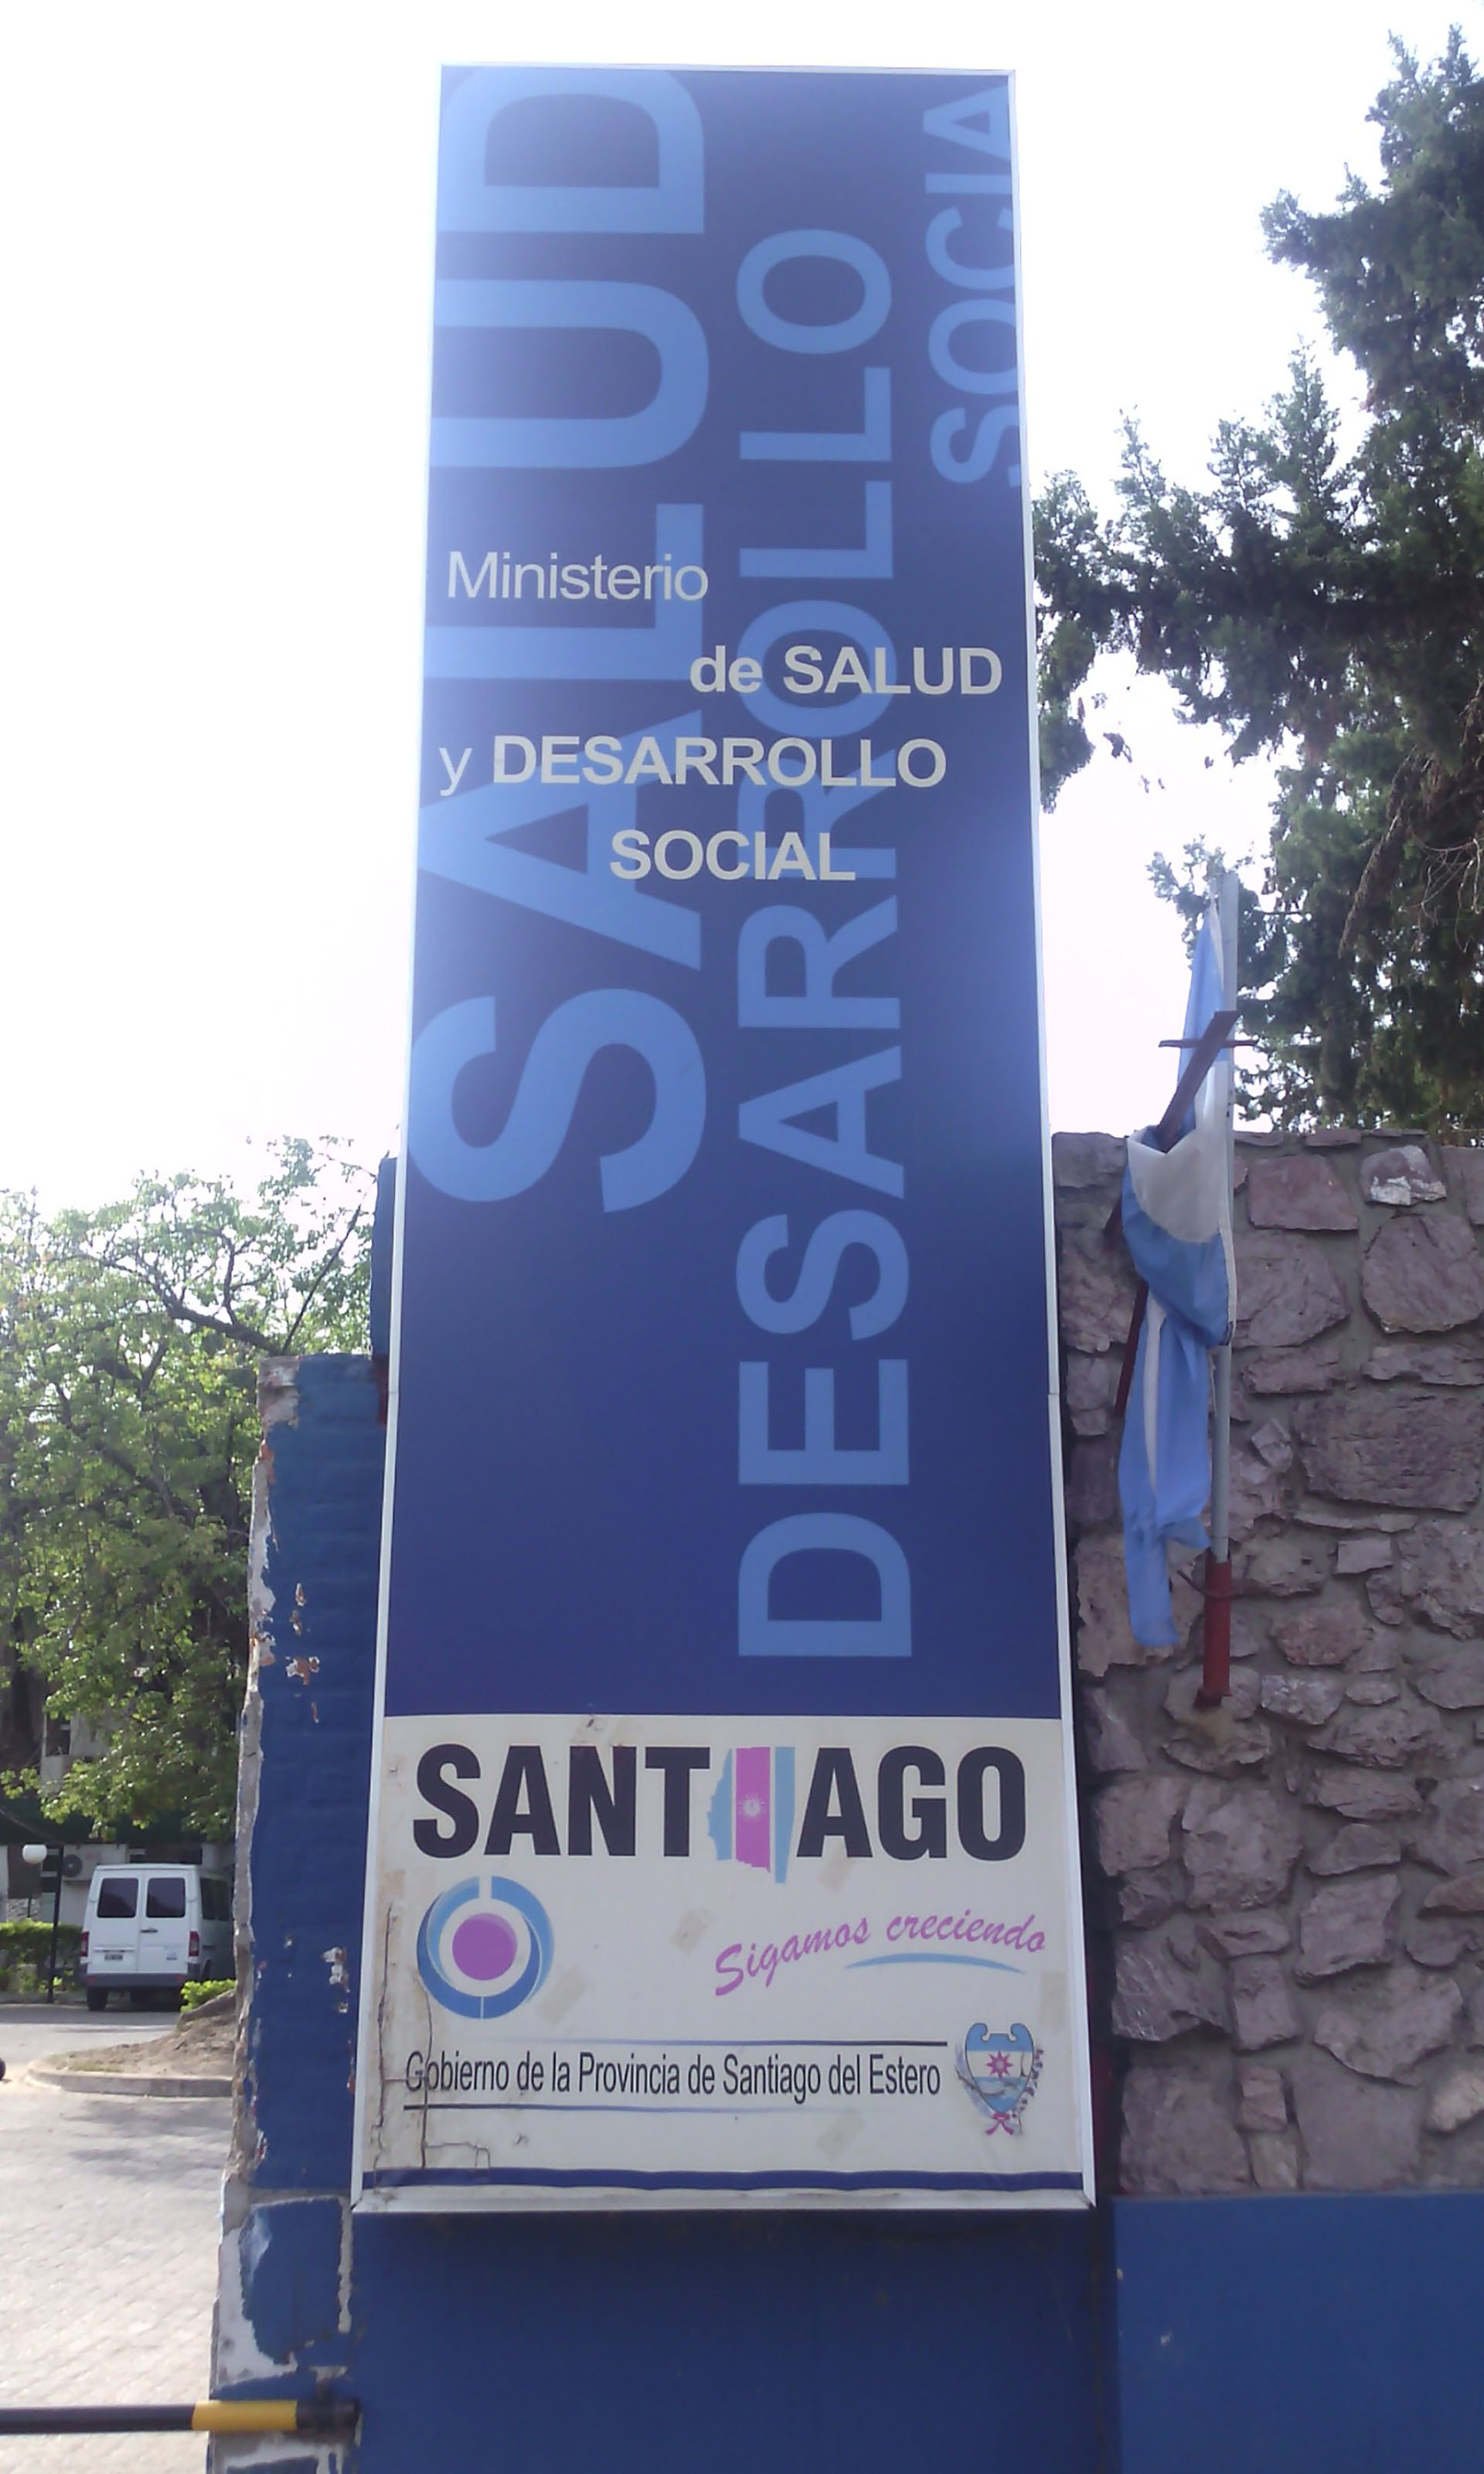 LAs vacunas fueron robadas en el Ministerio de Salud y Desarrollo Social de Santiago del Estero